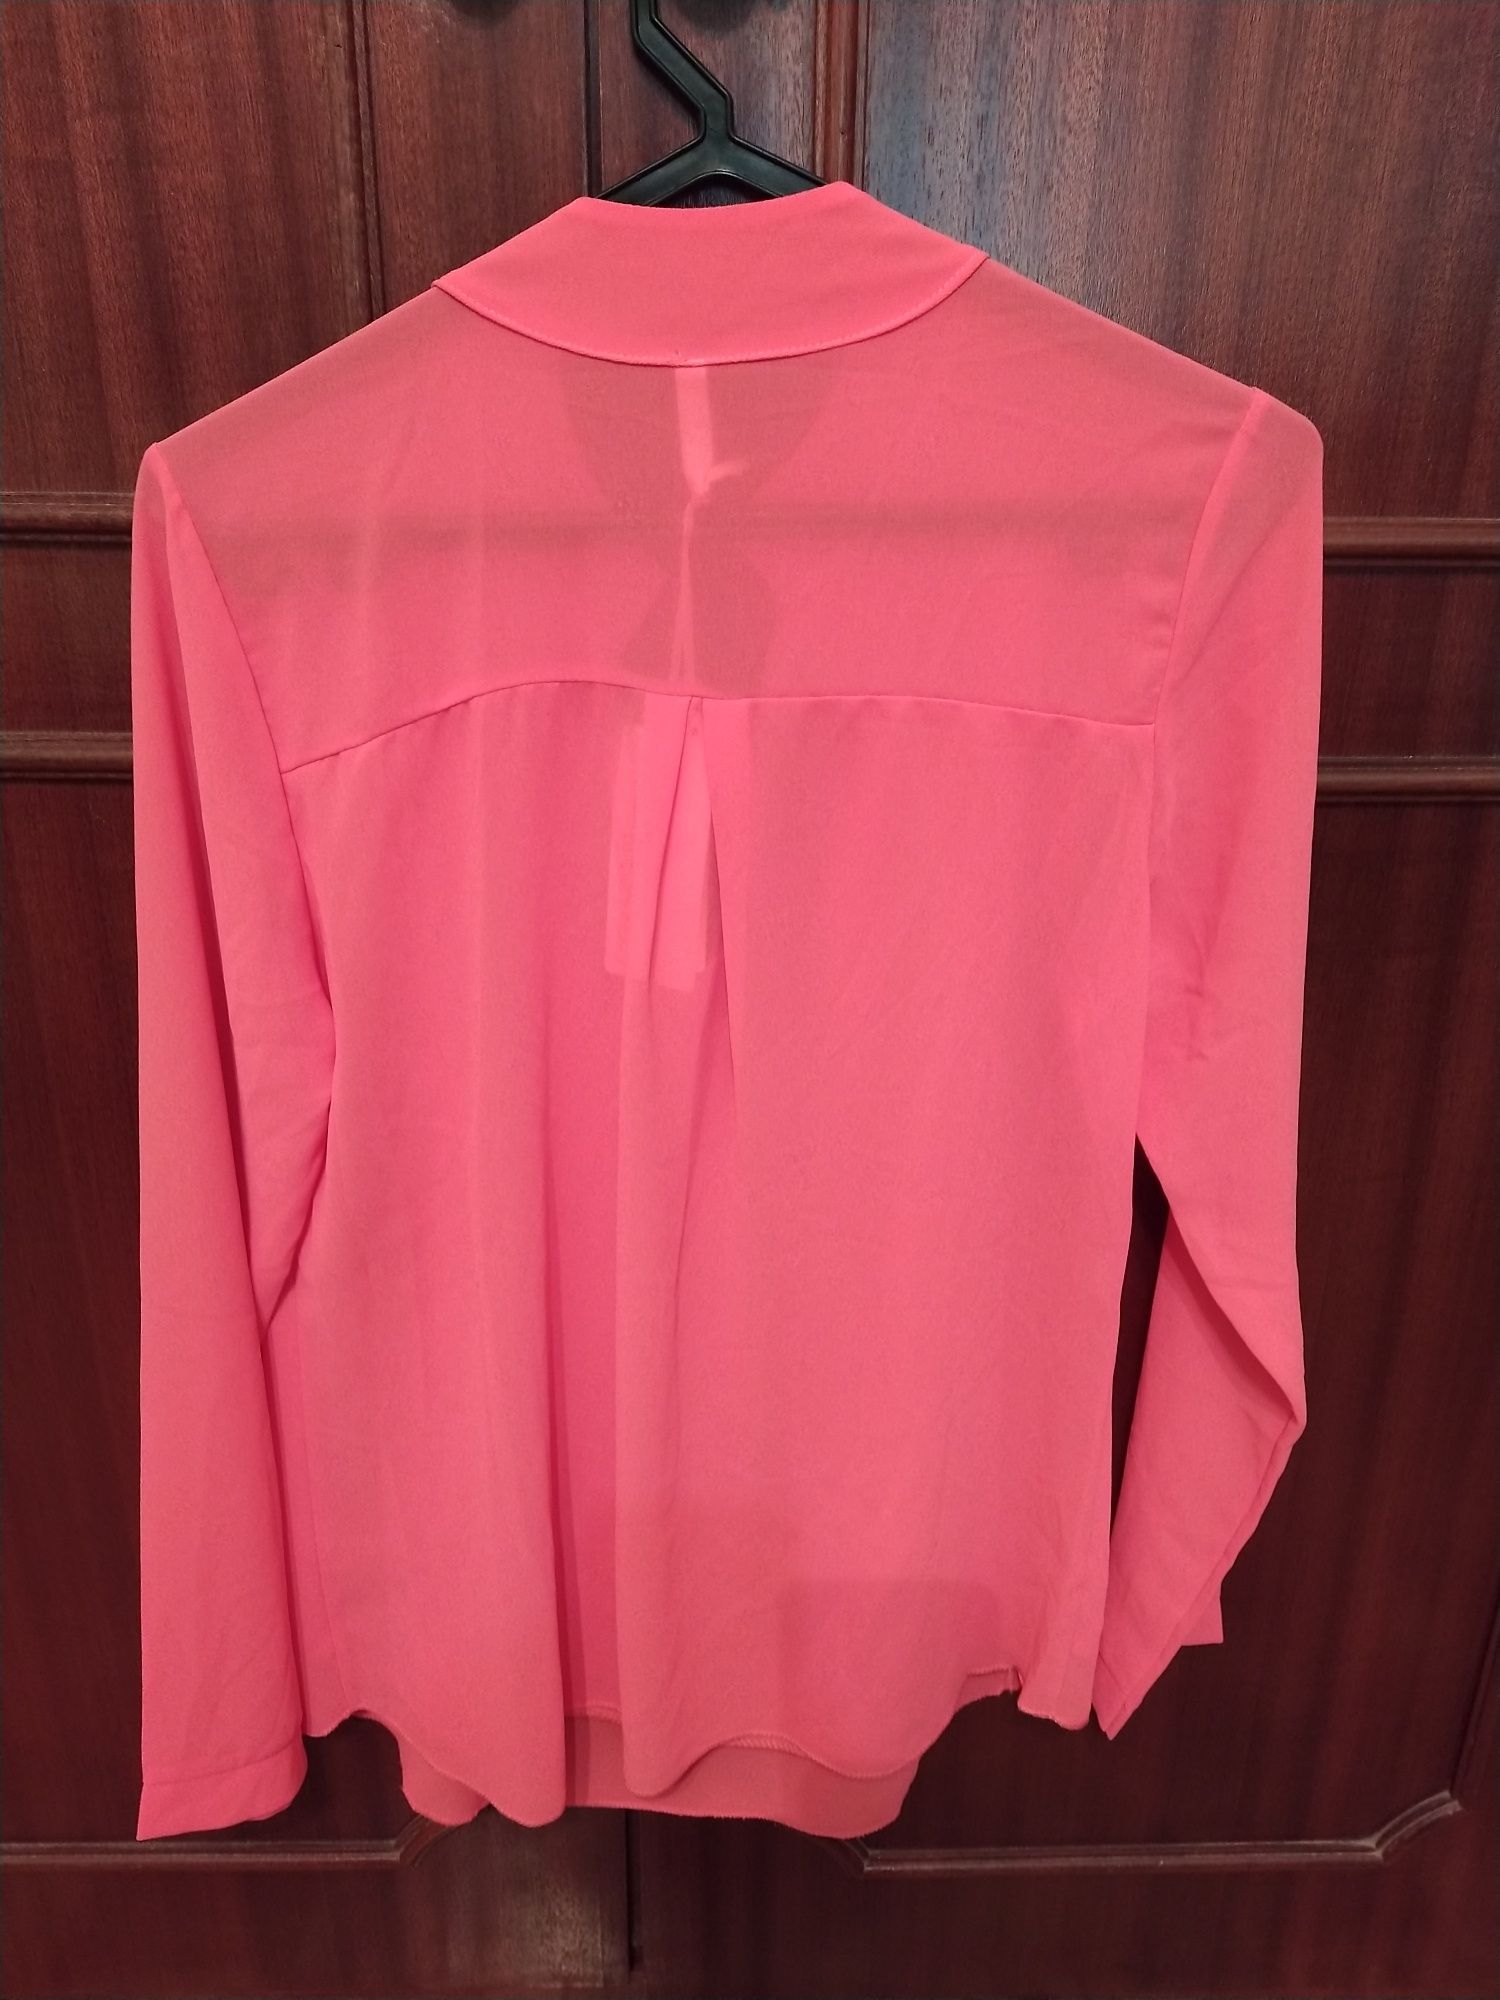 Blusa Rosa Velho (Nova)com Aplicação Tamanho XL